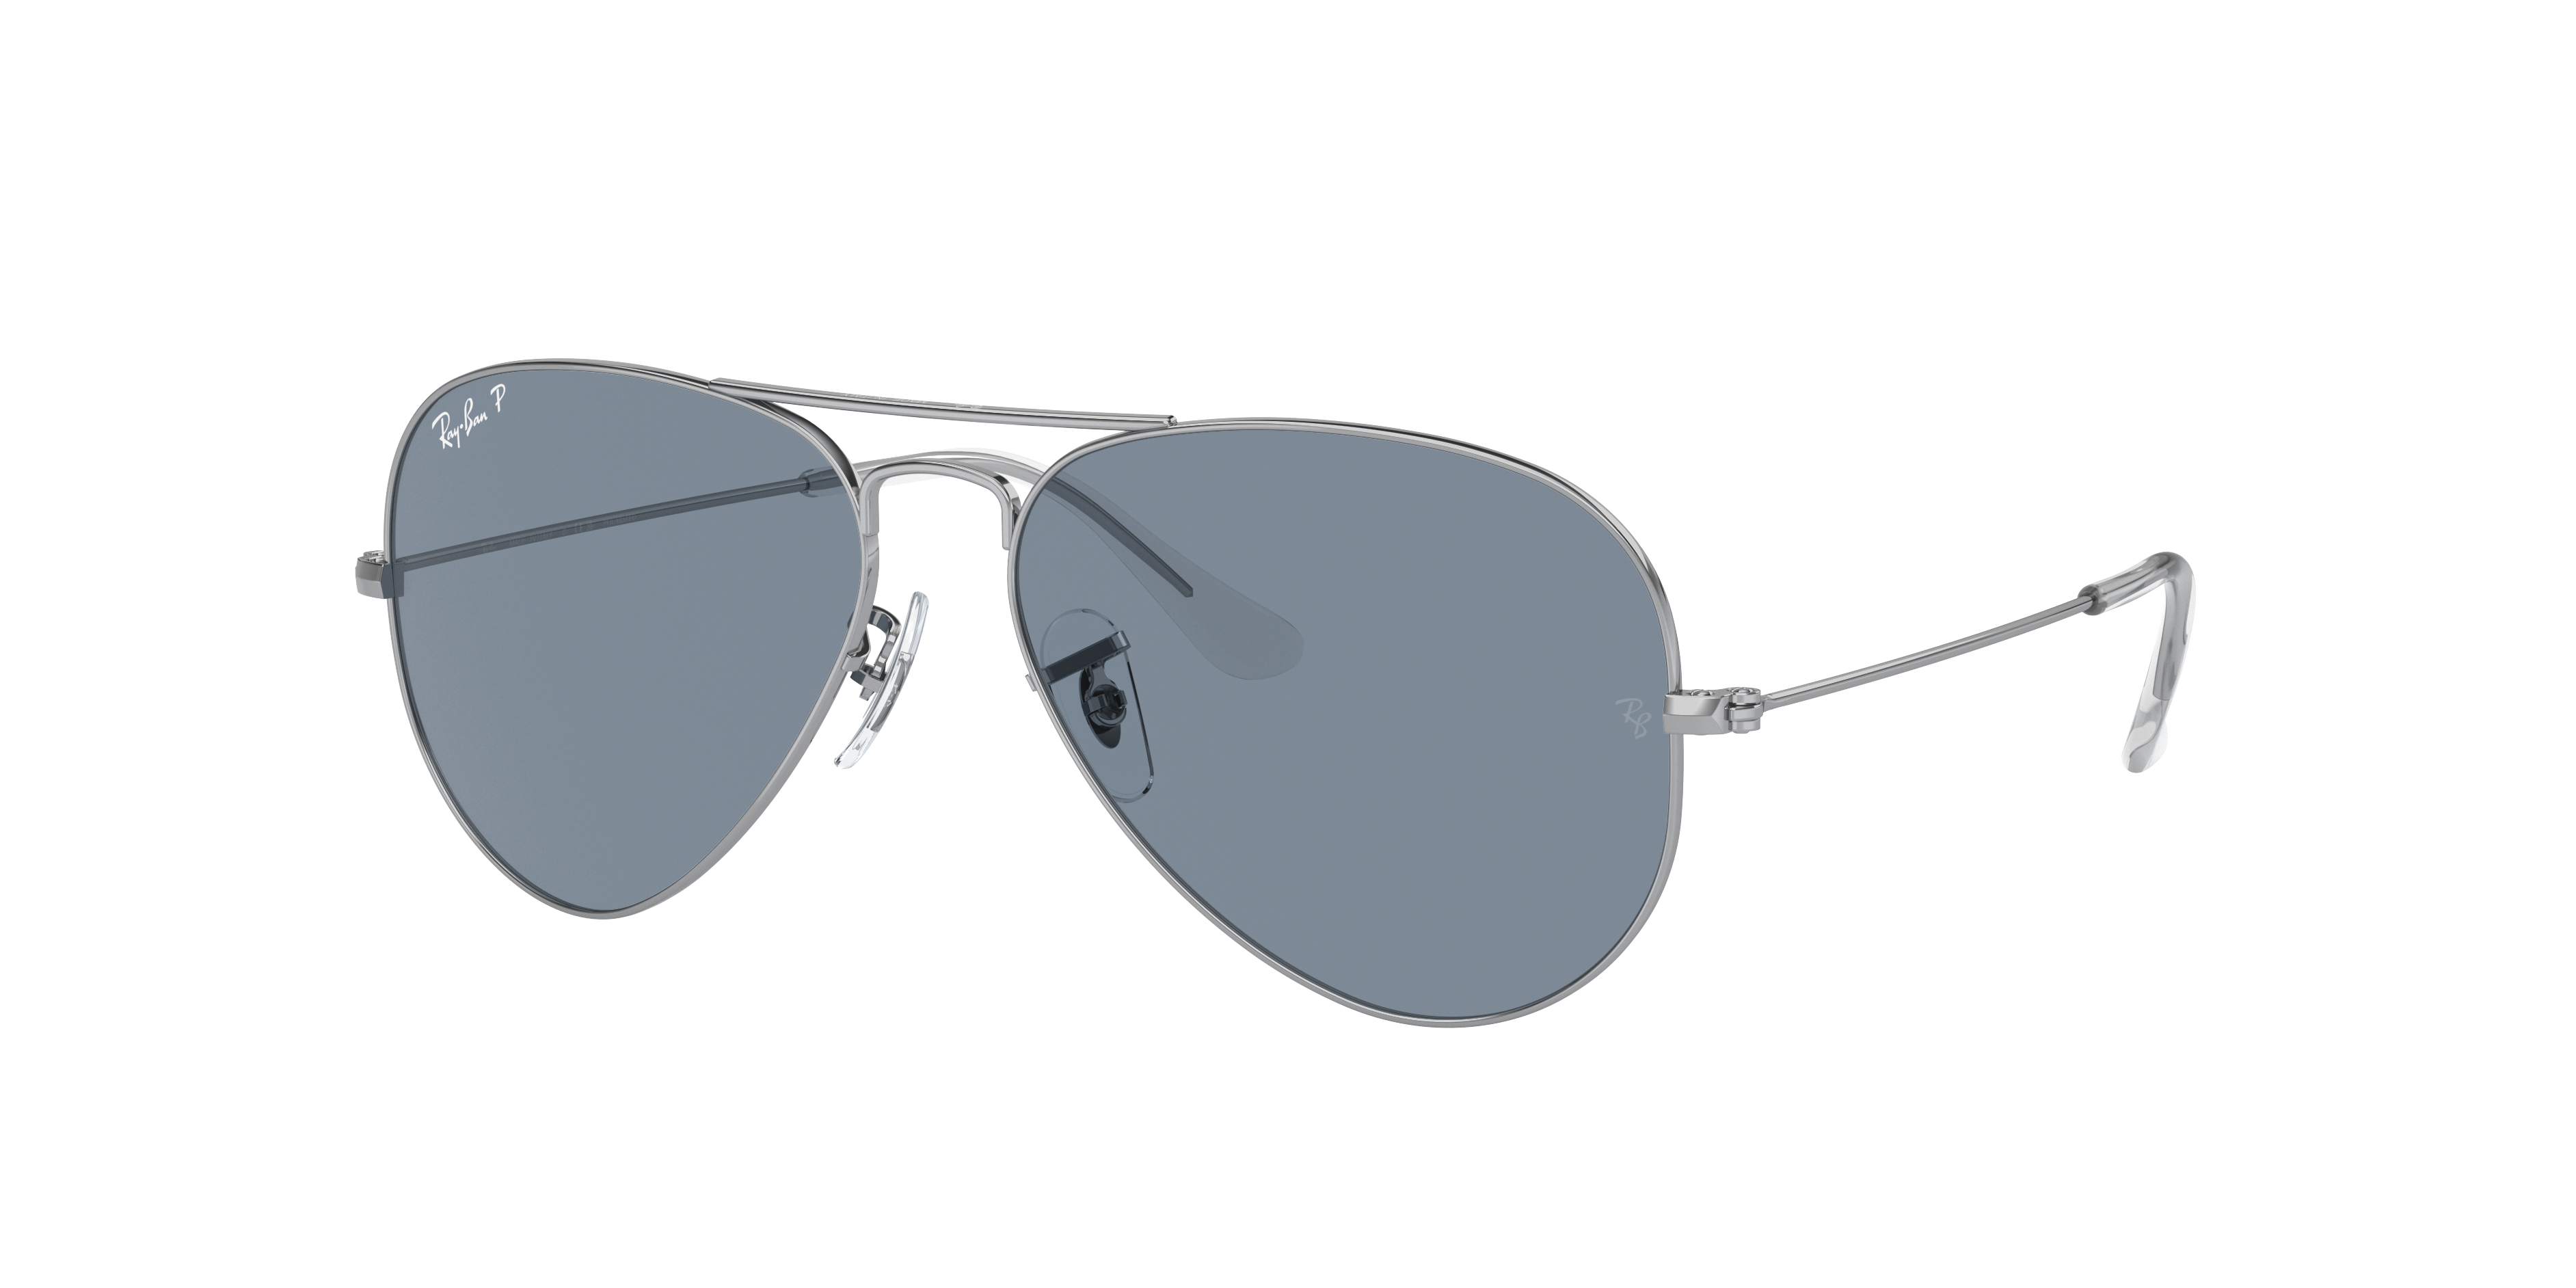 Óculos de Sol Ray-Ban linha classic.